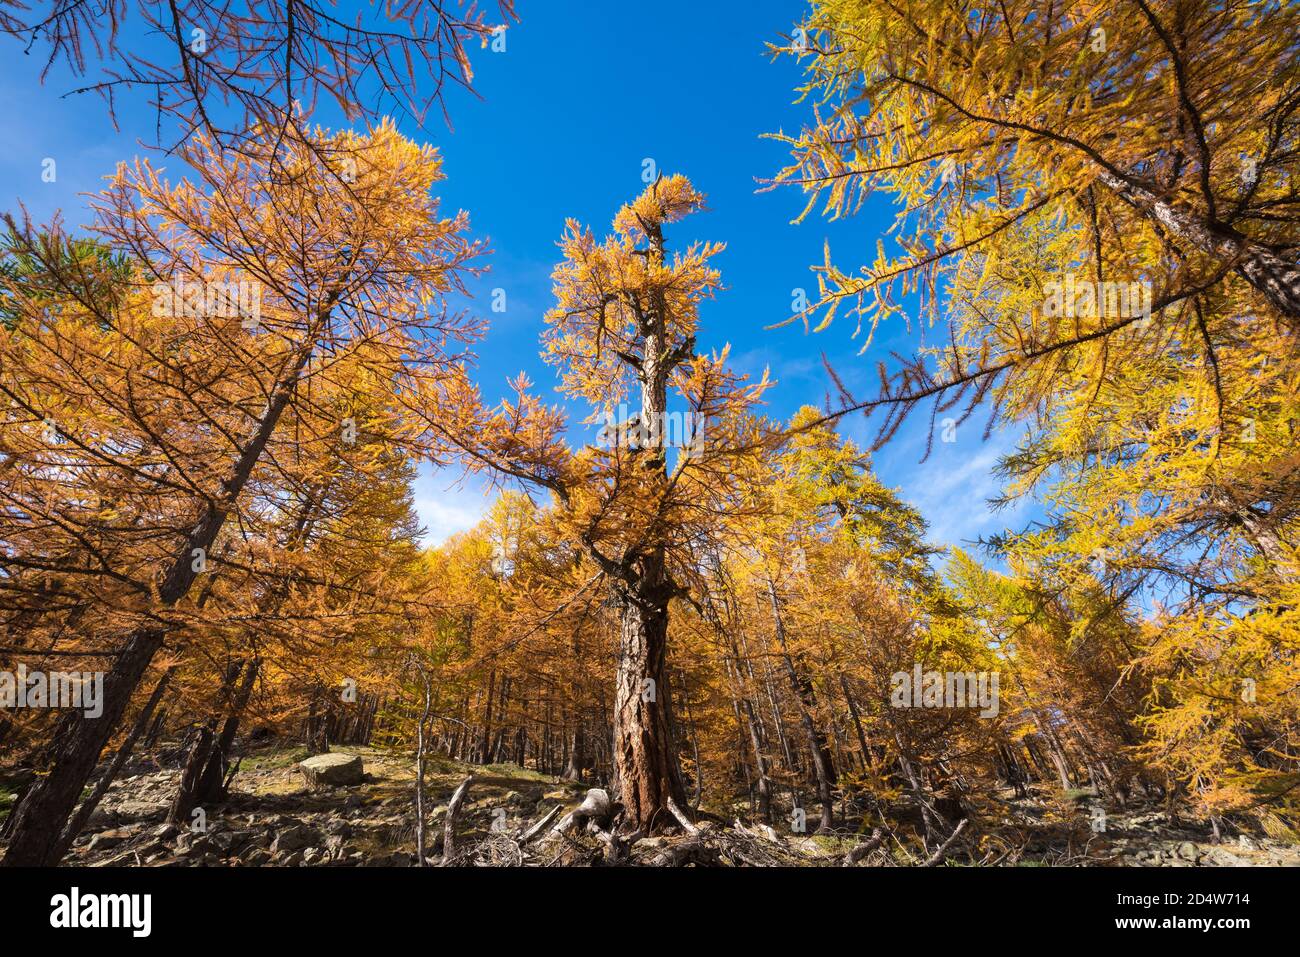 Mélèze vieux de plusieurs siècles aux couleurs de l'automne dans le parc national du Mercantour. Vallon de la Braisse, Alpes Maritimes, Alpes européennes, France Banque D'Images